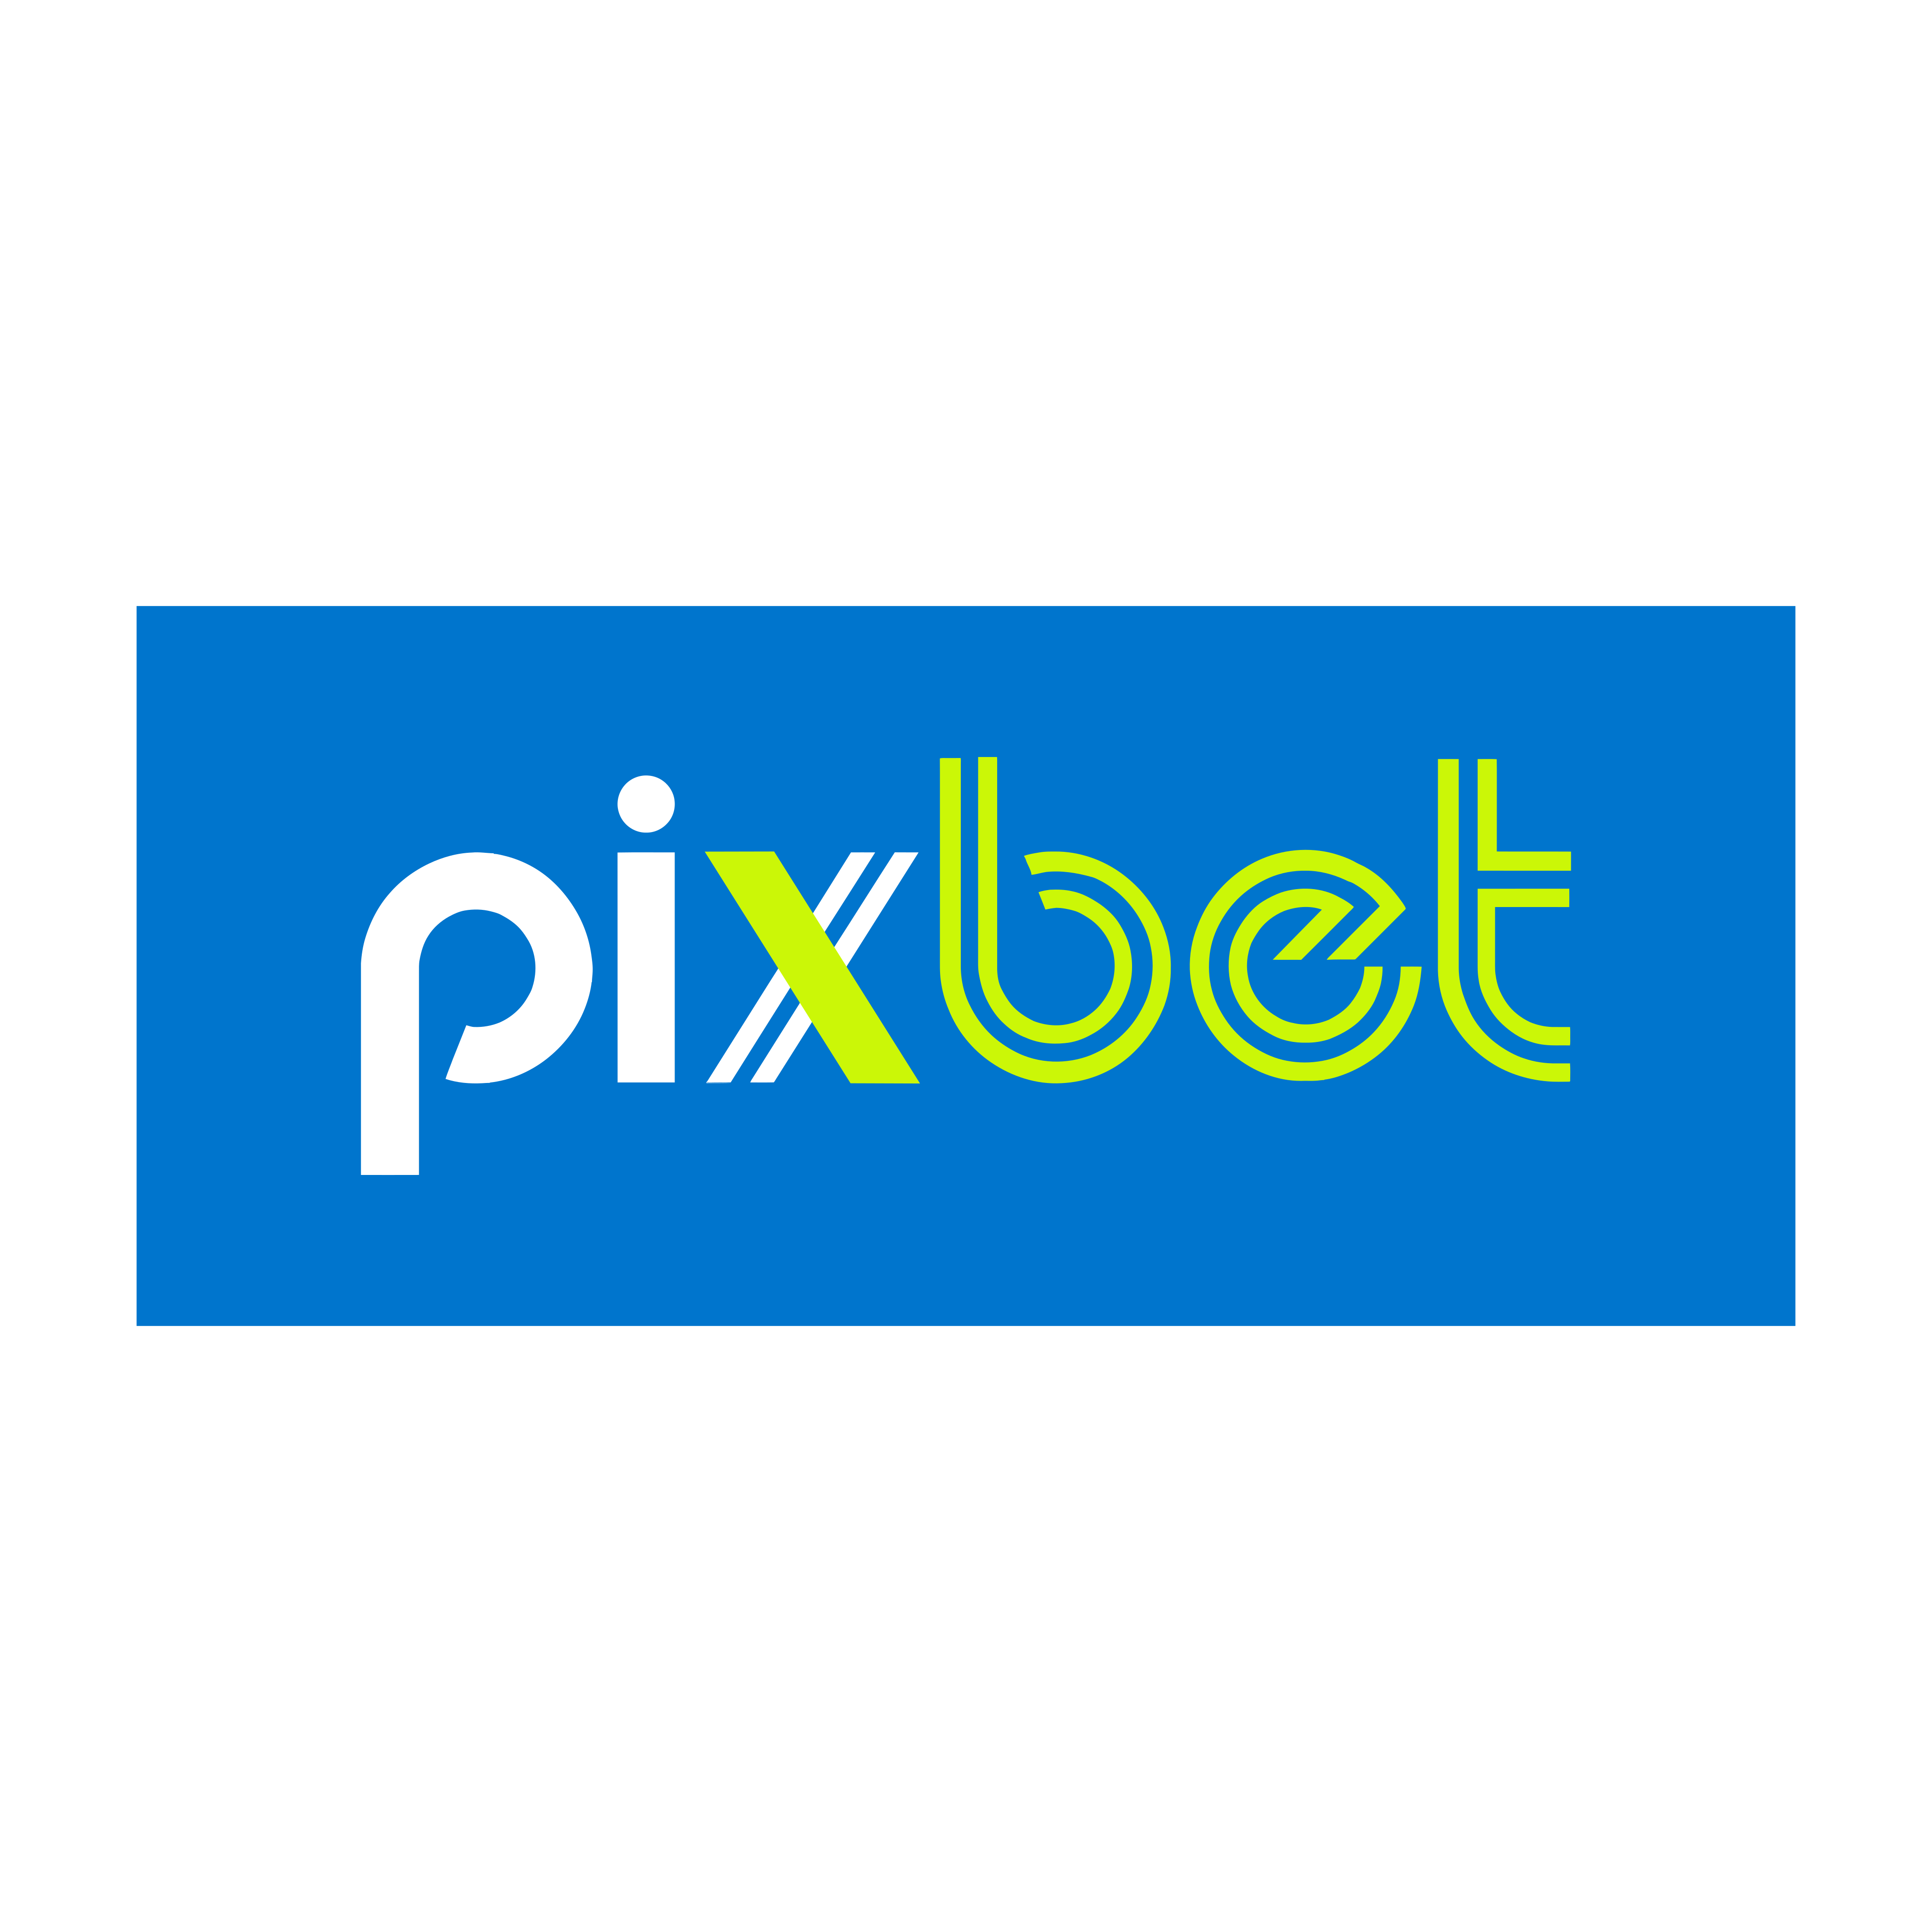 Pixbet Logo PNG.